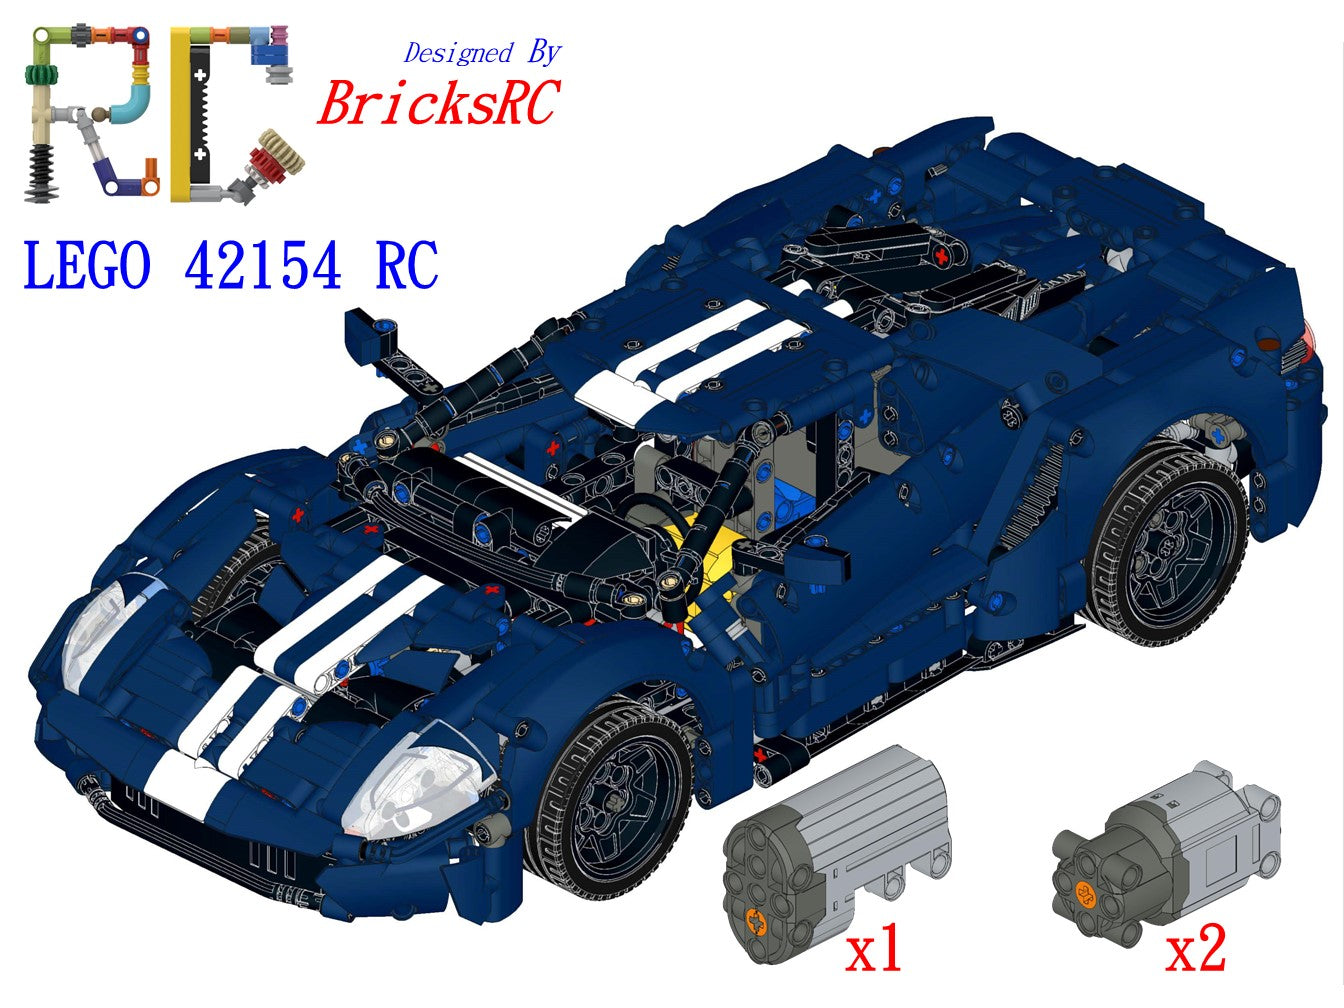 Authorized motorized instructions from BricksRC